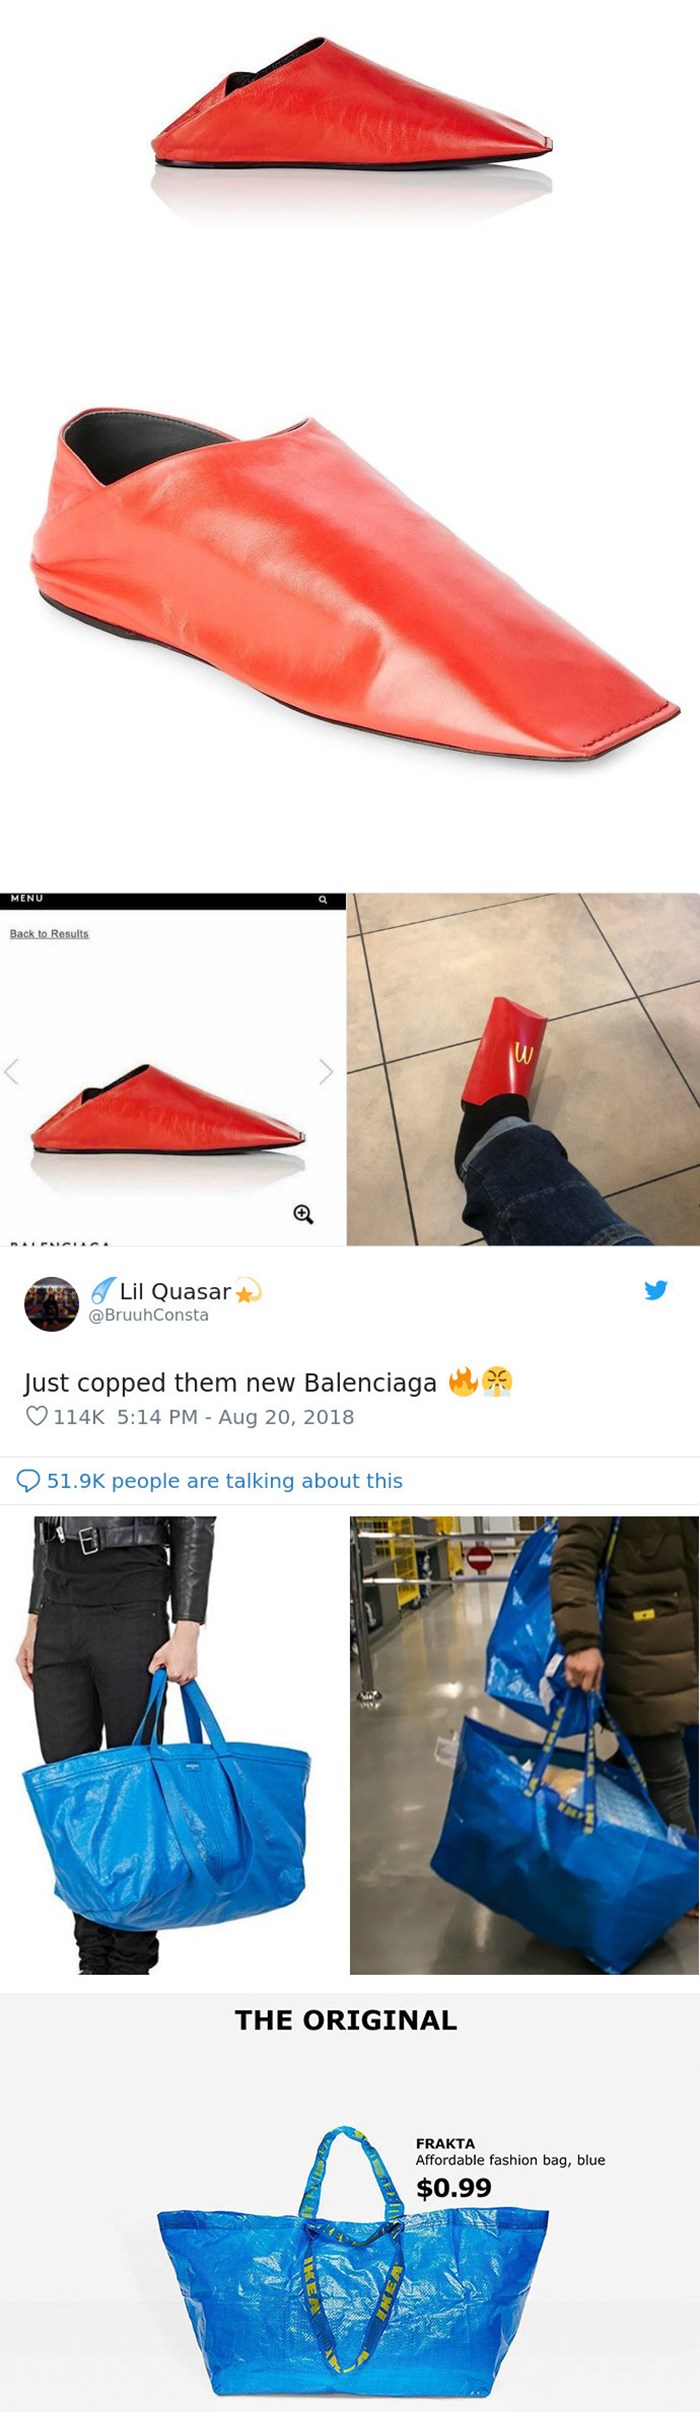 Šveđani obećali napraviti kopiju Balenciaginih cipela ako dobiju određeni broj lajkova na fotku